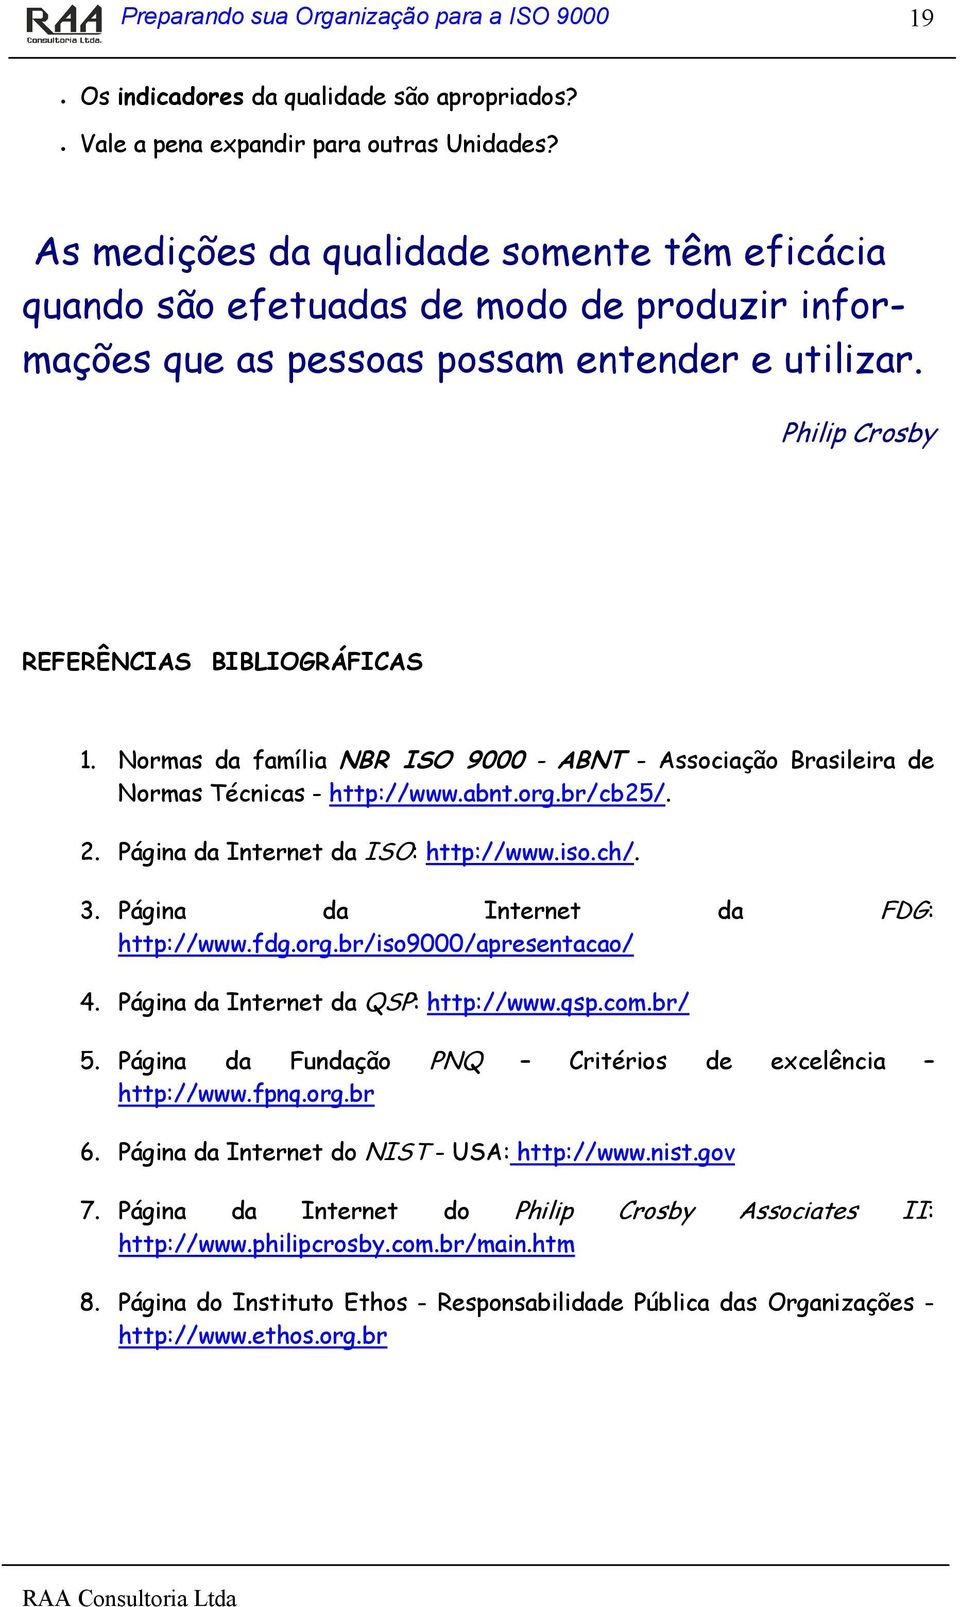 Normas da família NBR ISO 9000 - ABNT - Associação Brasileira de Normas Técnicas - http://www.abnt.org.br/cb25/. 2. Página da Internet da ISO: http://www.iso.ch/. 3.